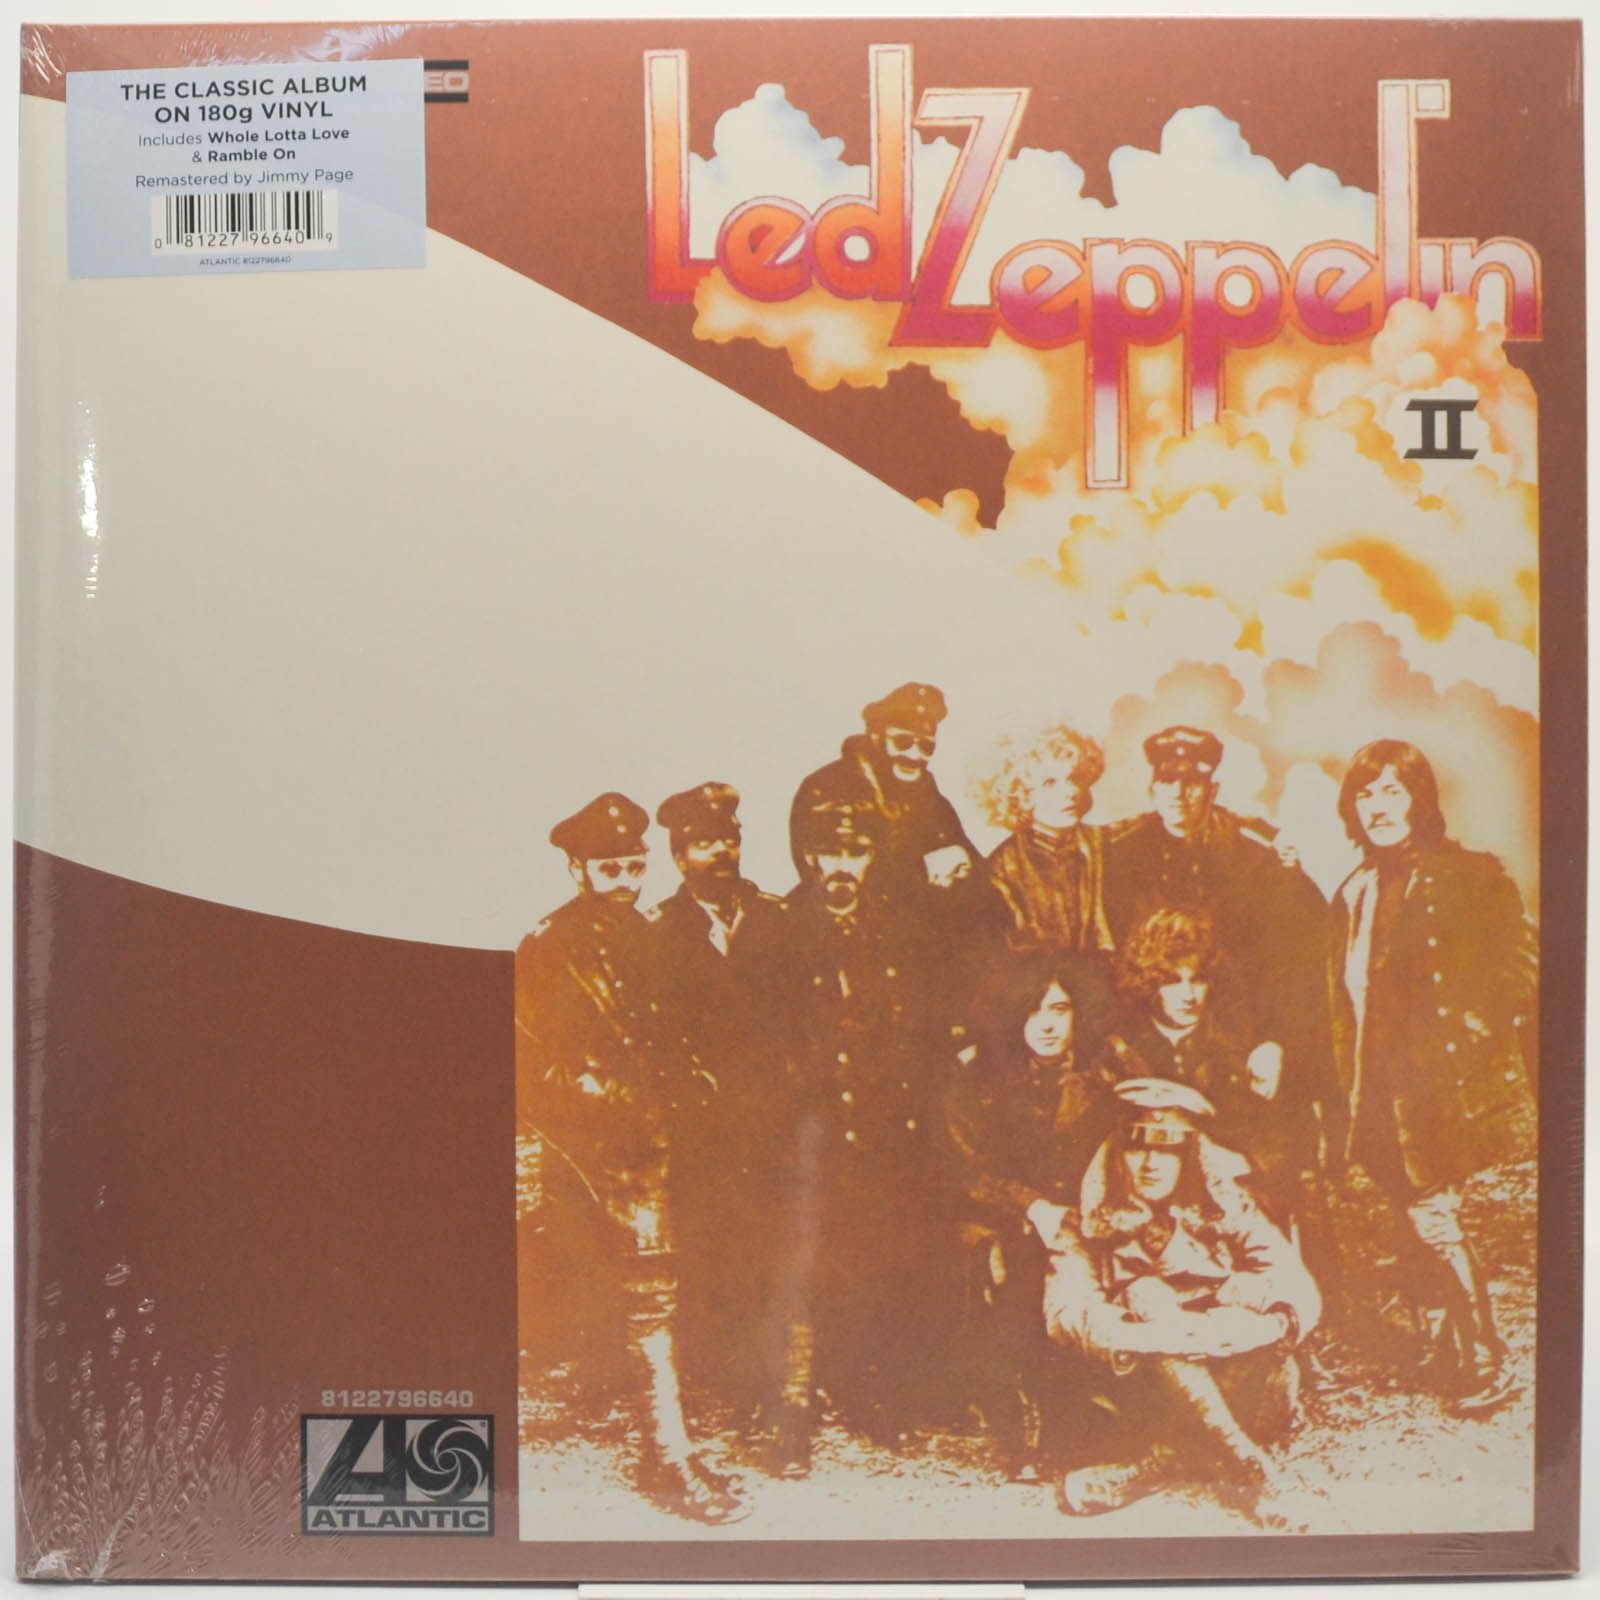 Led Zeppelin — Led Zeppelin II, 1969